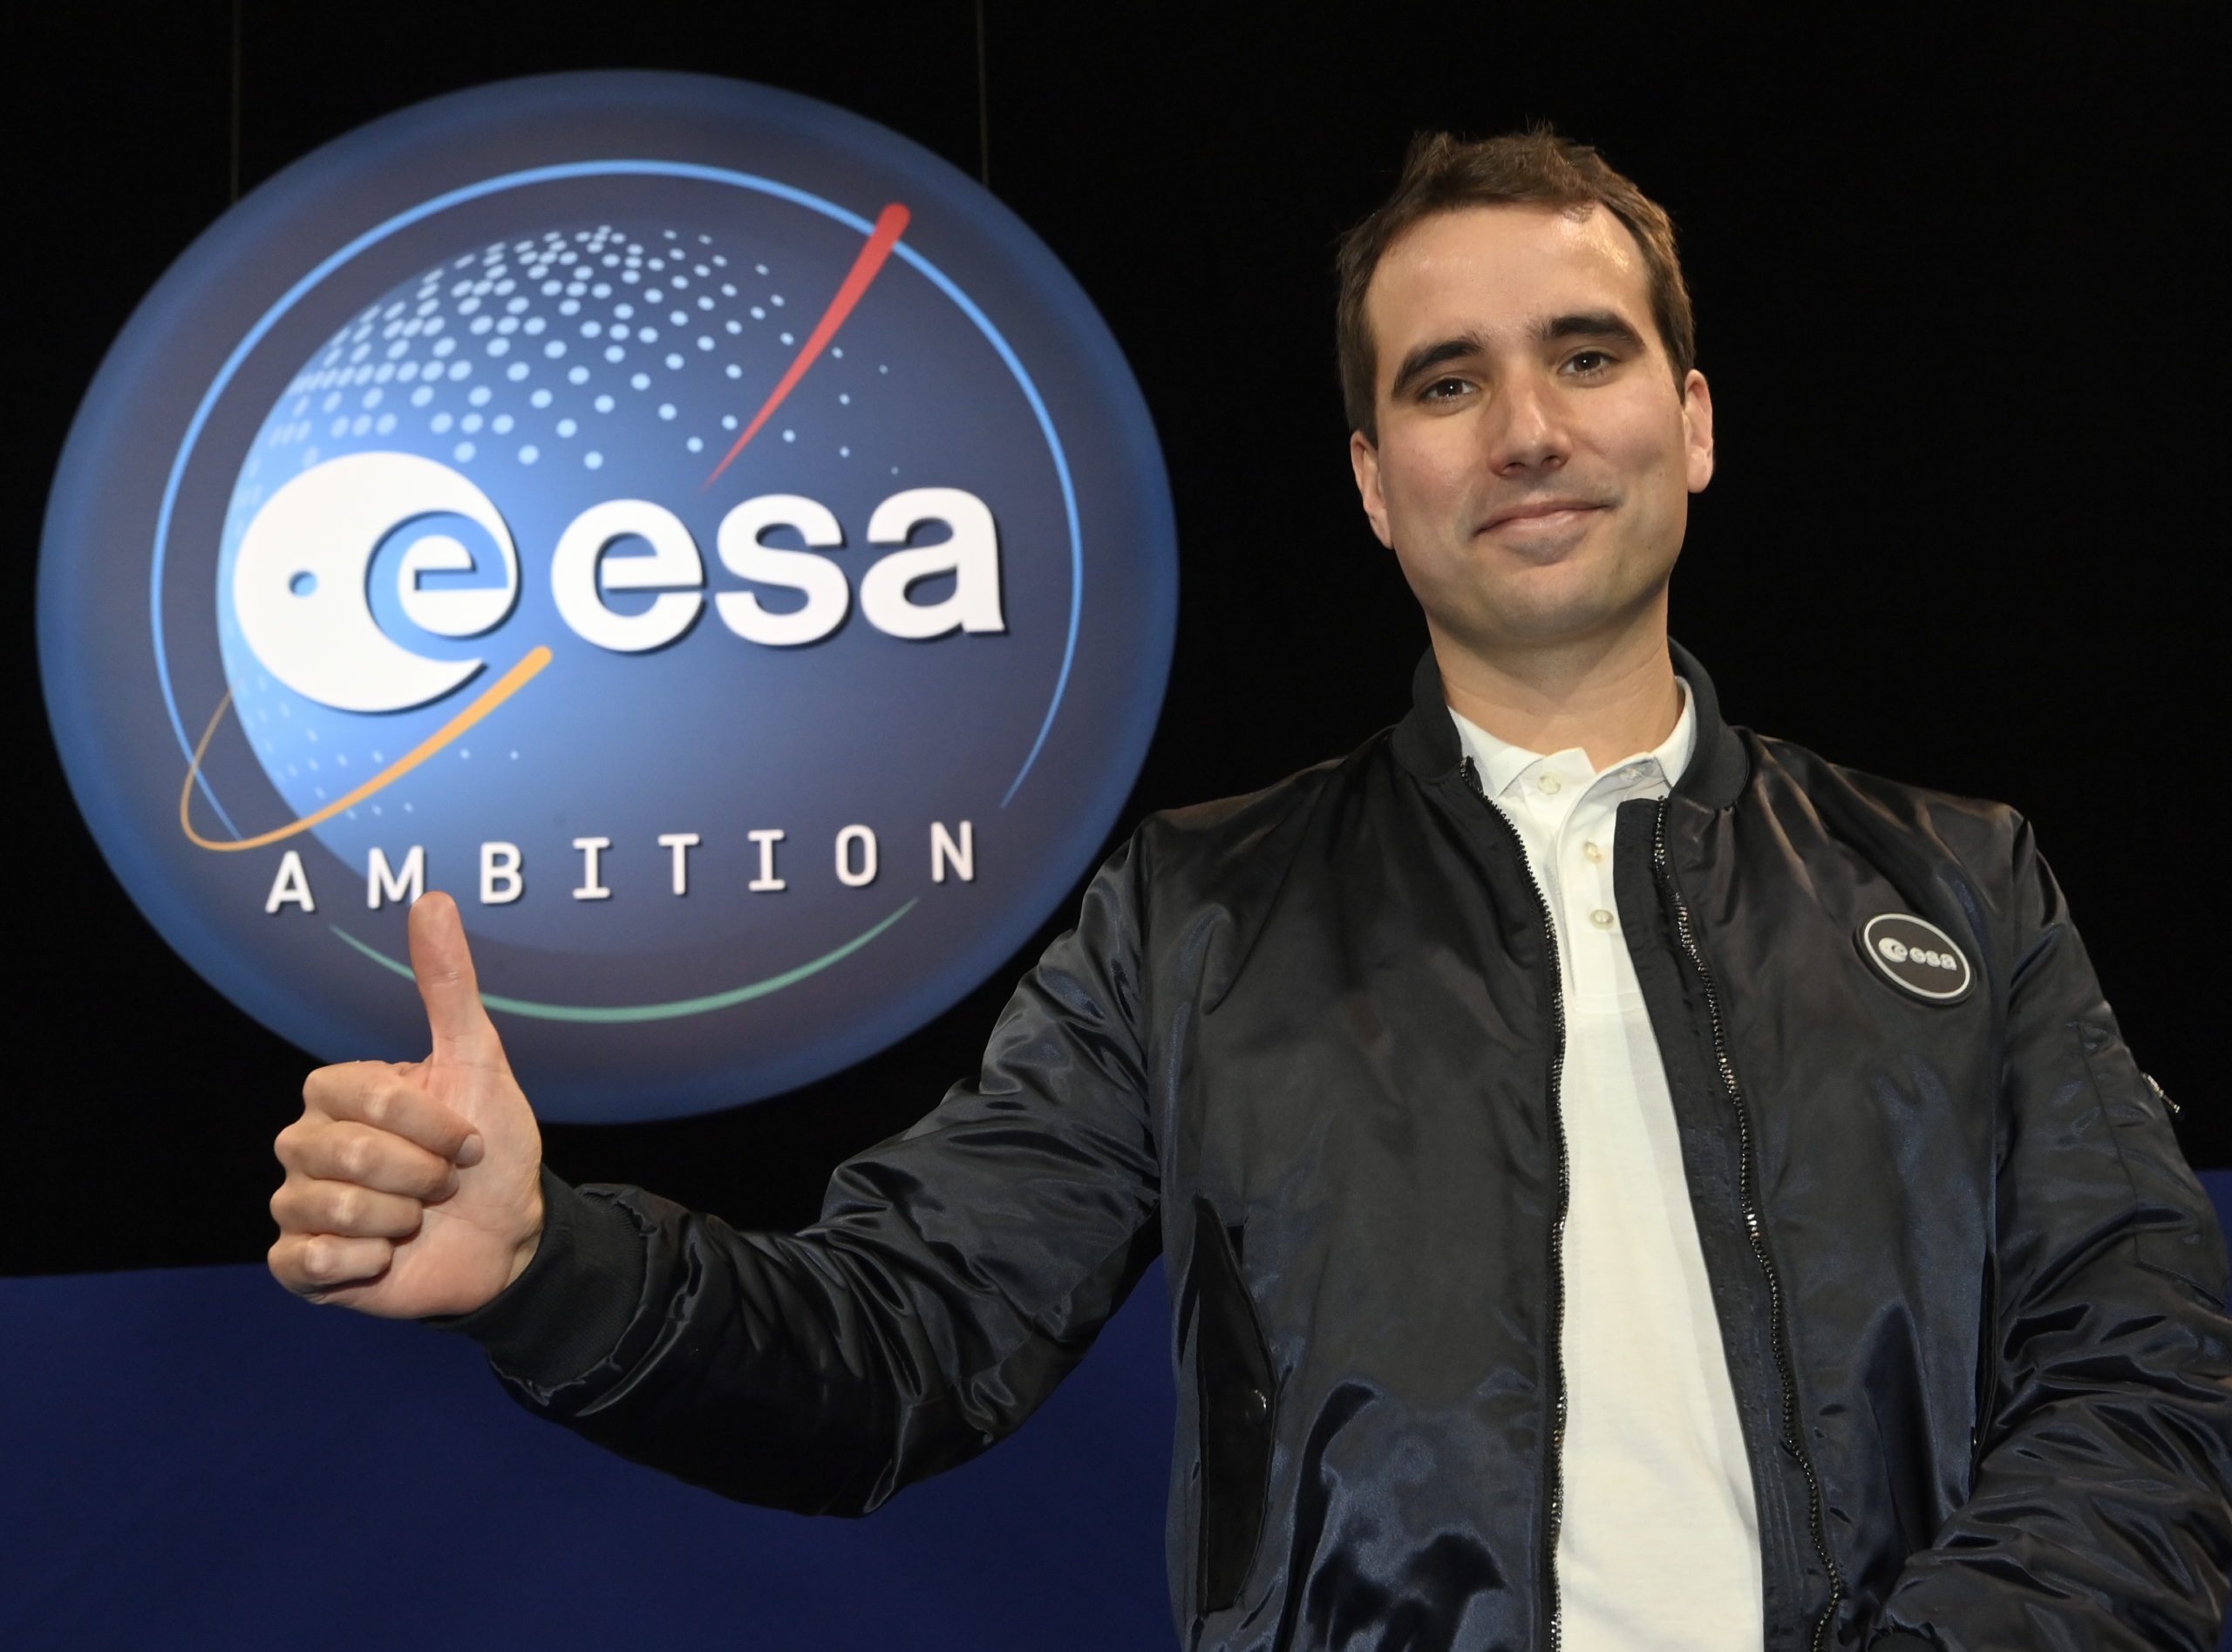 Le Belge Raphaël Liégeois a été sélectionné pour partir dans l'espace